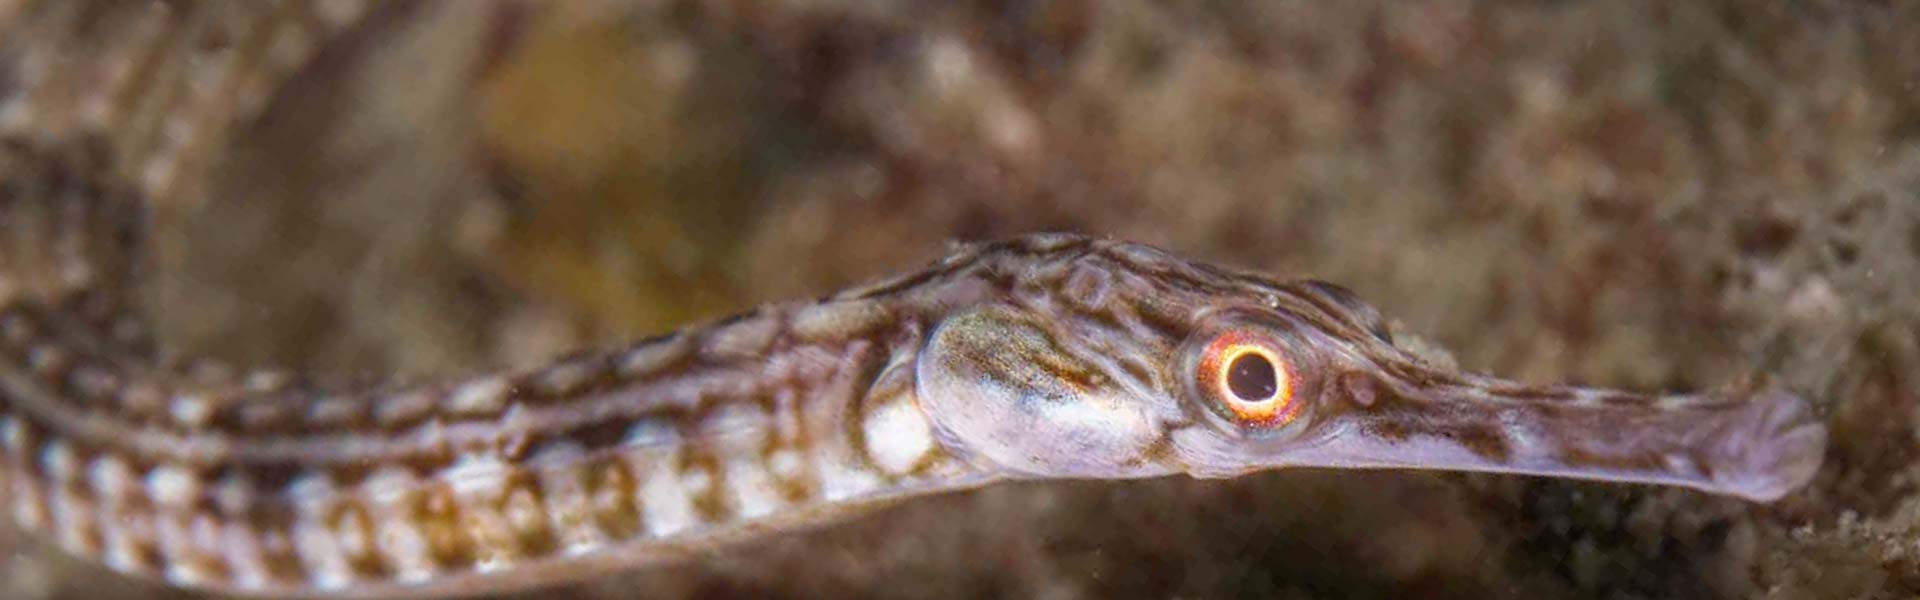 the-alligator-pipefish